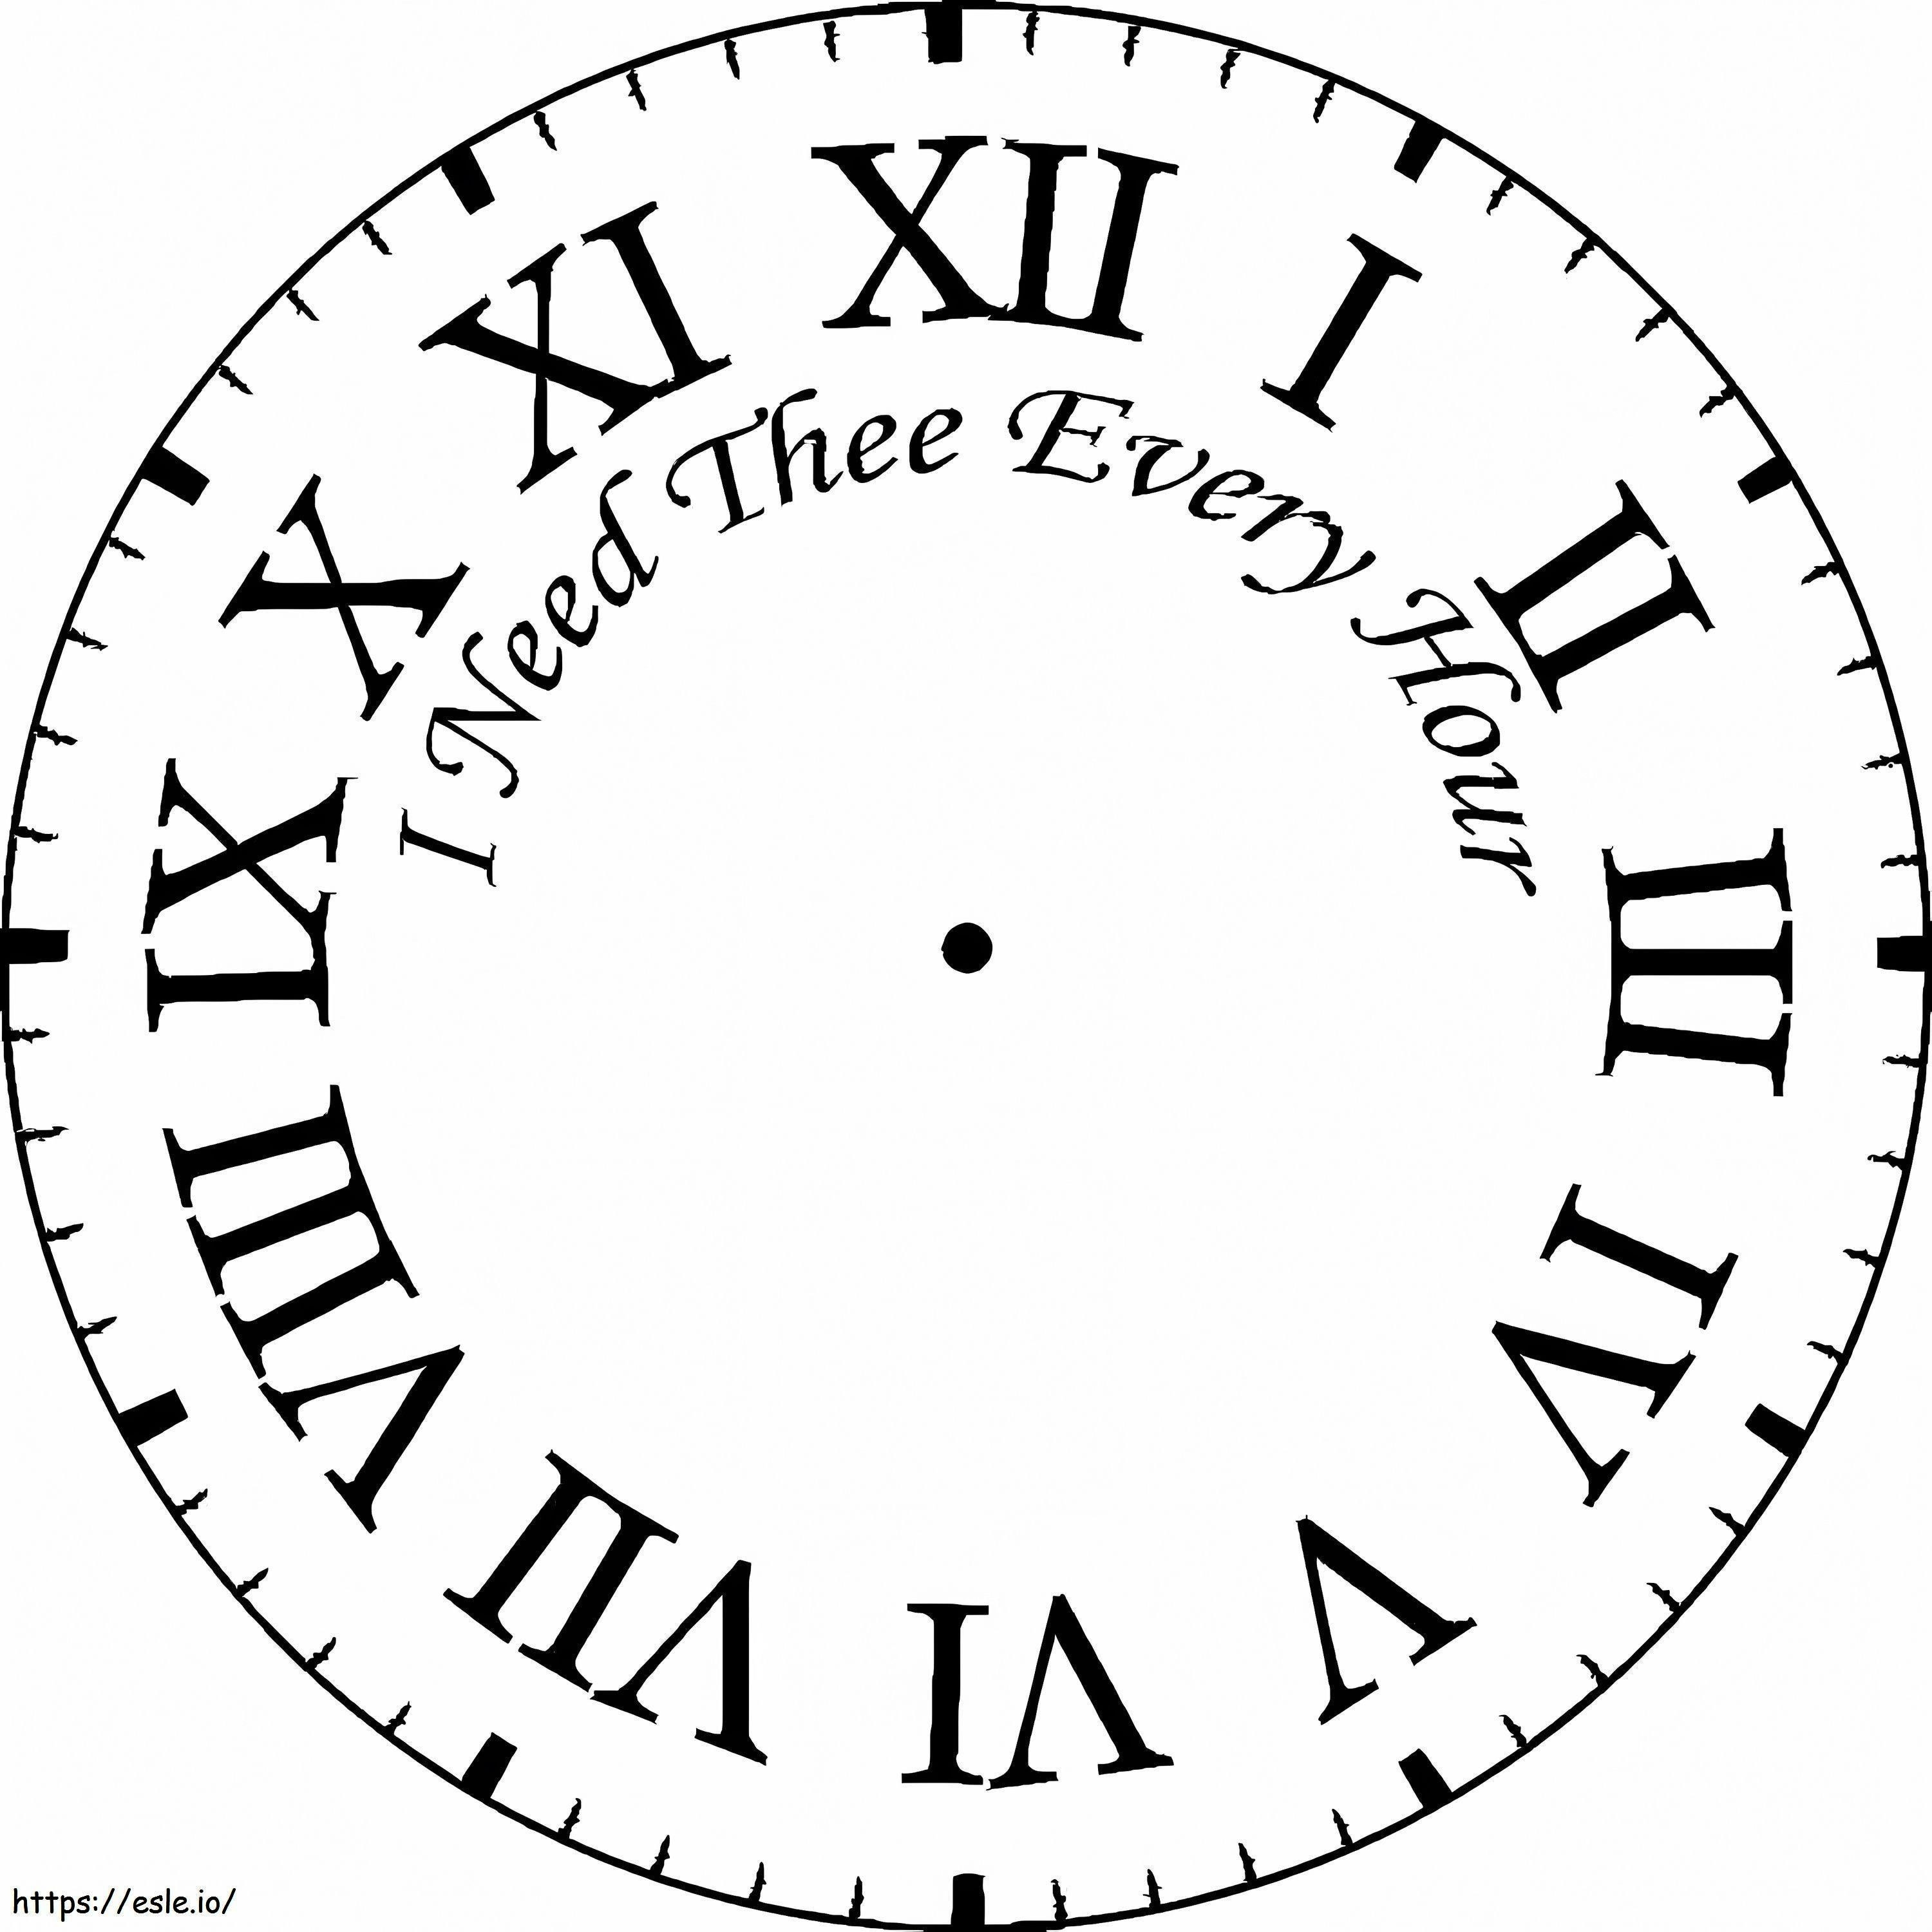 Zegar rzymski kolorowanka